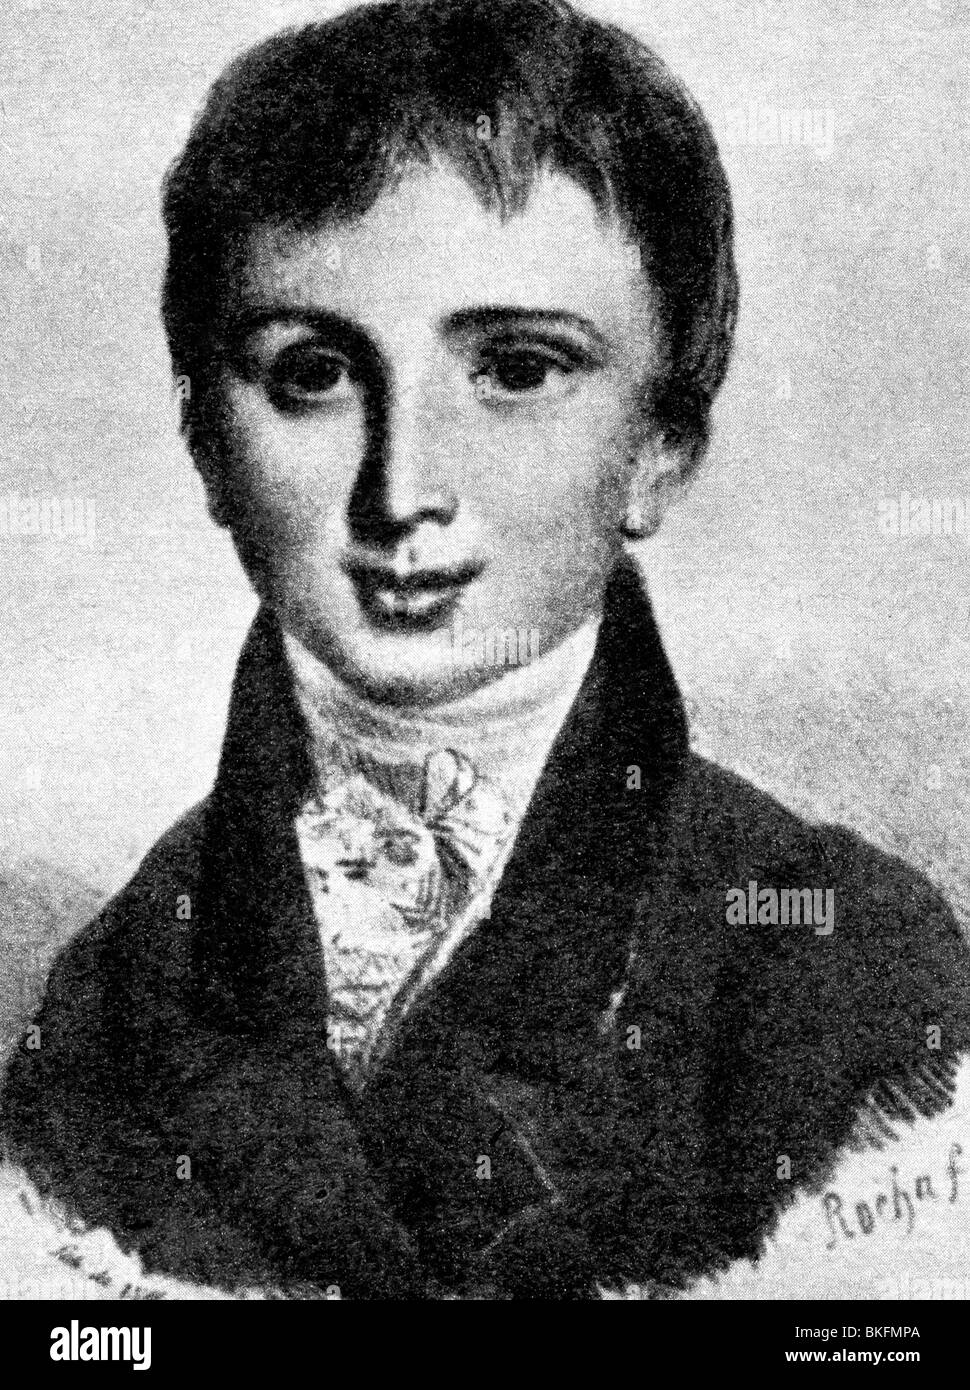 Liszt, Franz, 22.10.1811 - 31.7.1886, compositore e pianista ungherese, figlio di undici anni, 1823, Foto Stock